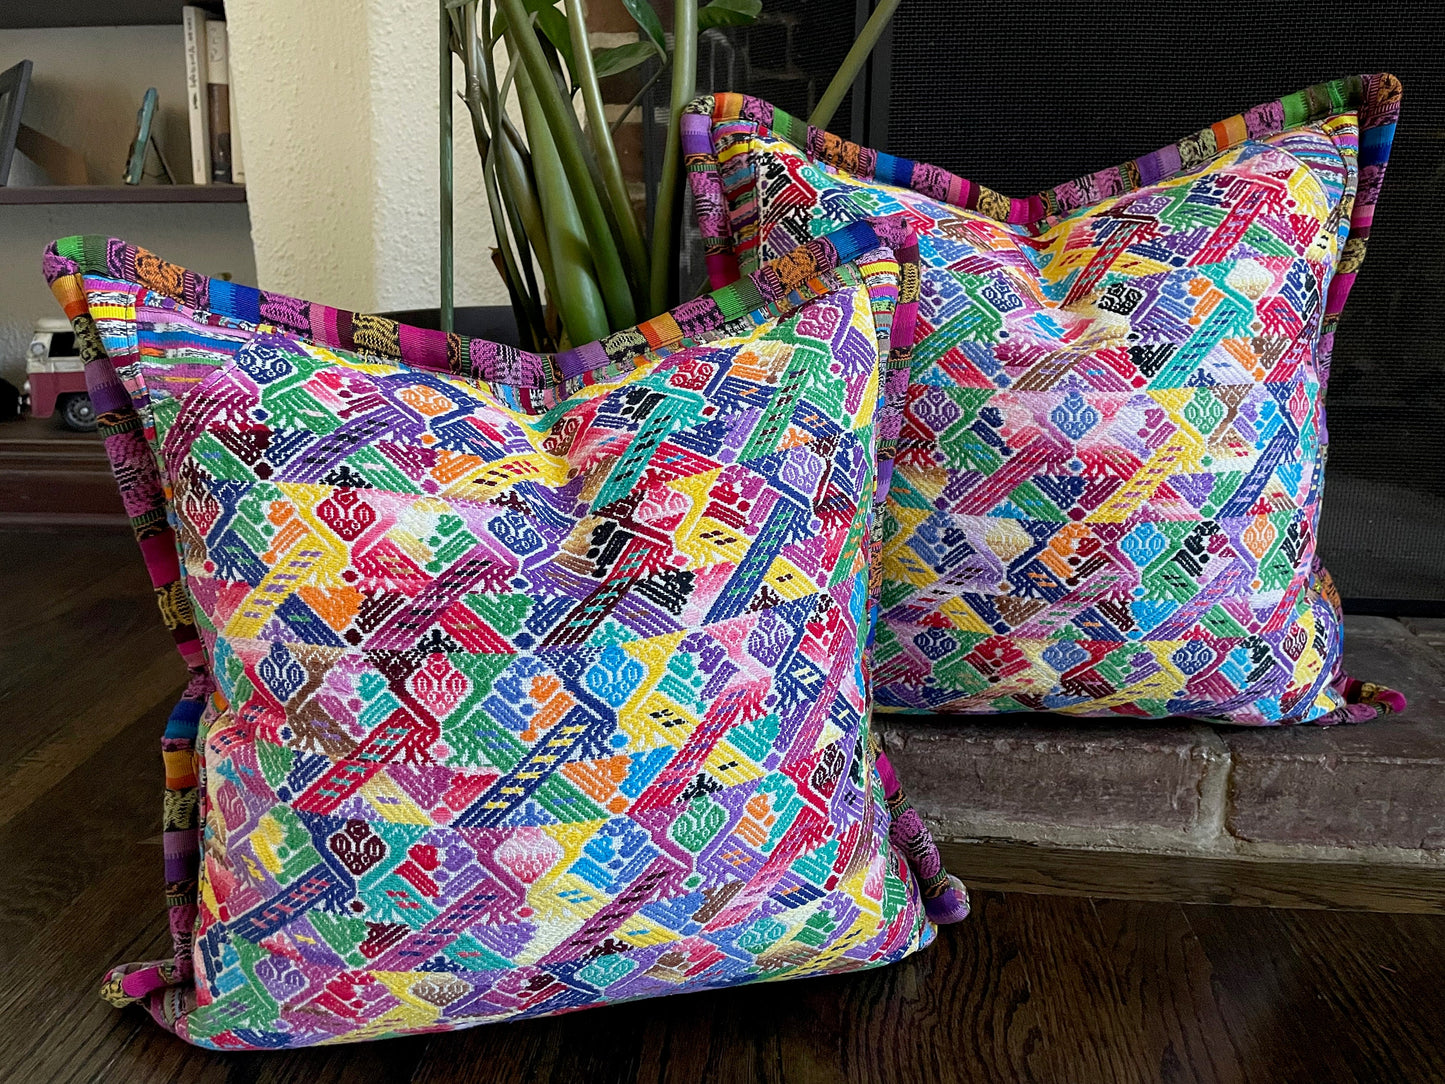 Artisan Huipil Pillow Covers from Huehuetenango